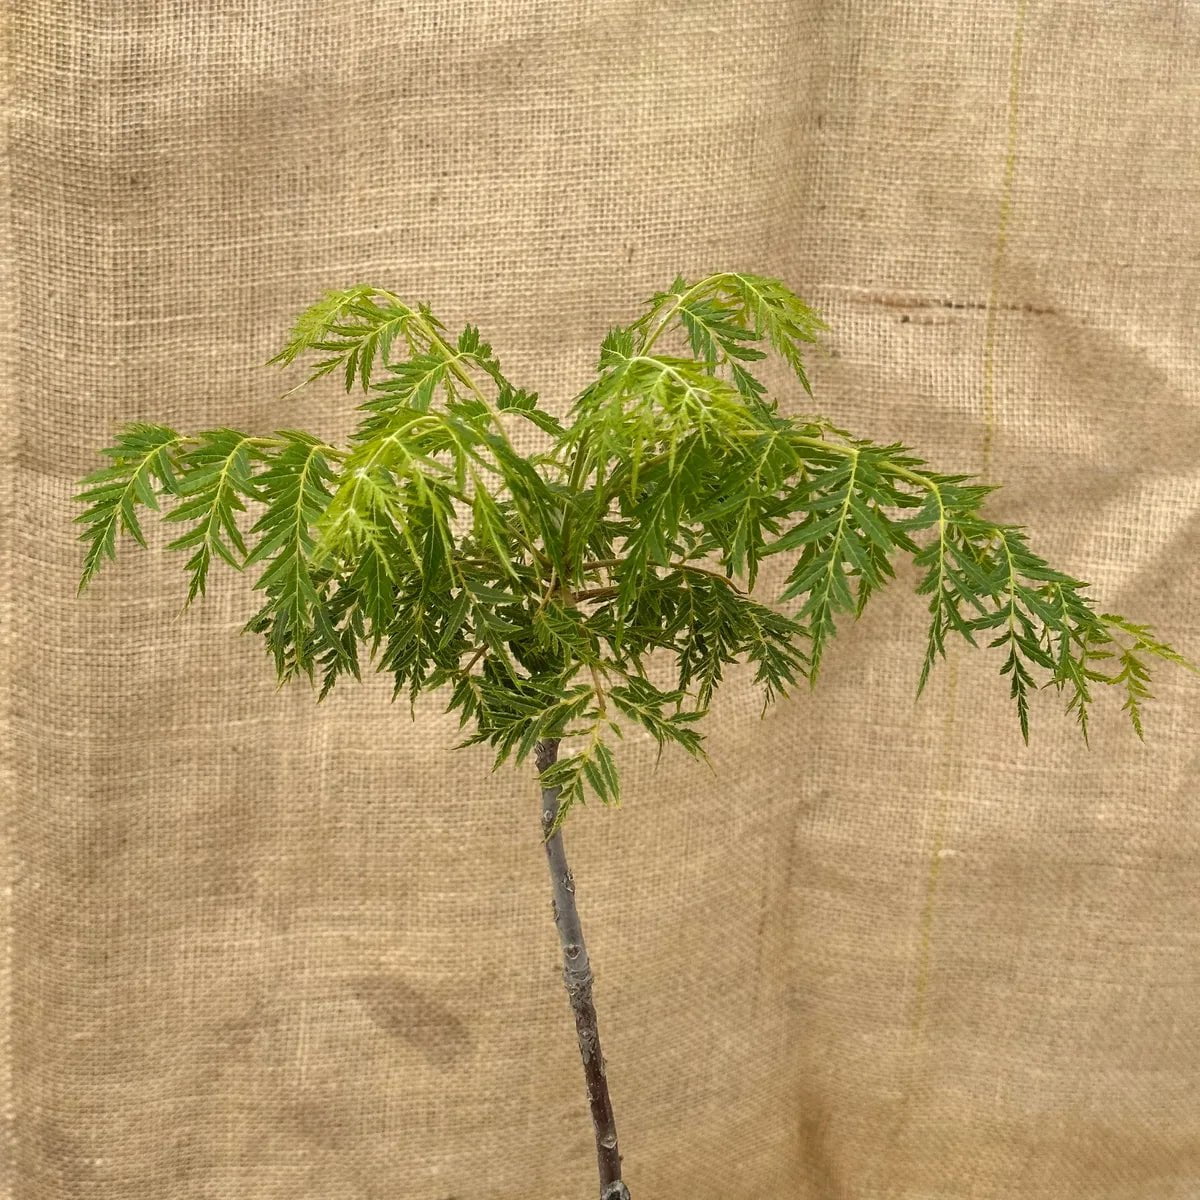 ackerbaum Schwarznussbaum - Lacciniata kaufen